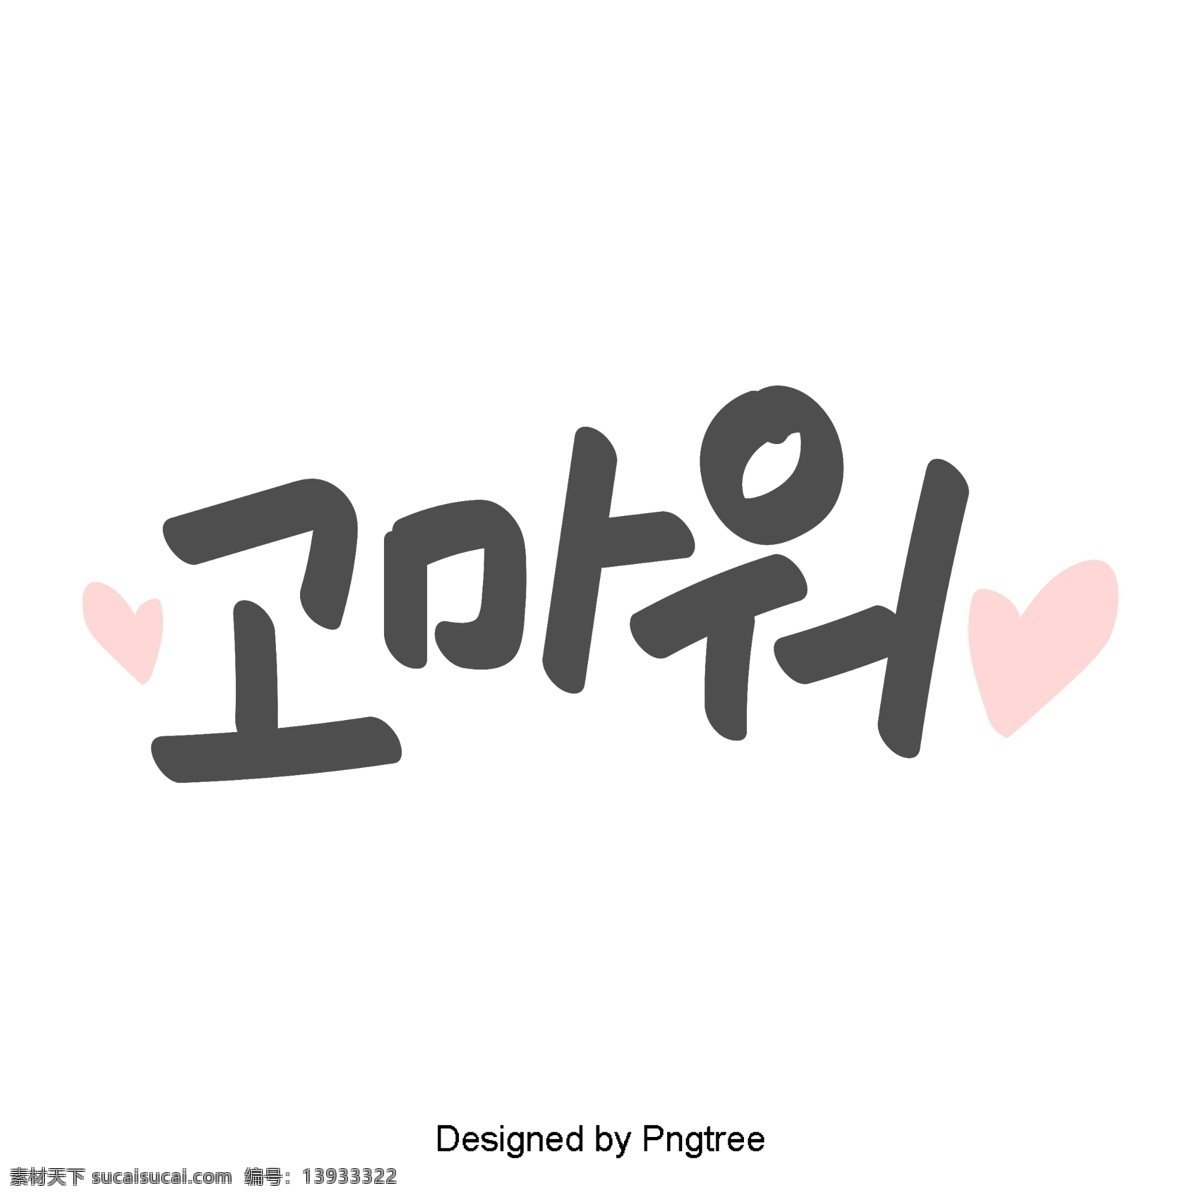 谢谢 美丽 韩国 日常 表达 简单 手工 字体 材料 贴纸 每日词汇量 可爱 字形 粉 移动支付